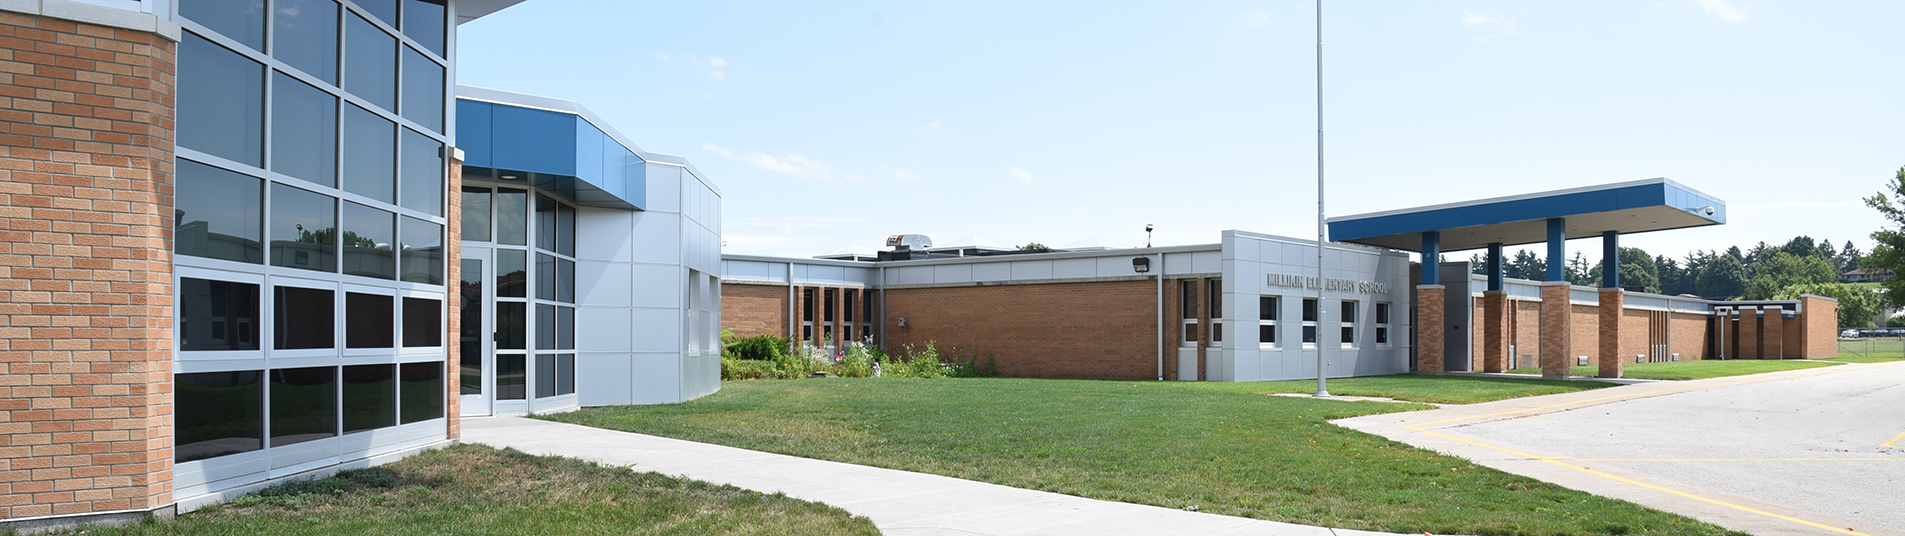 Illinois School Architecture Design - Millikin Elementary School